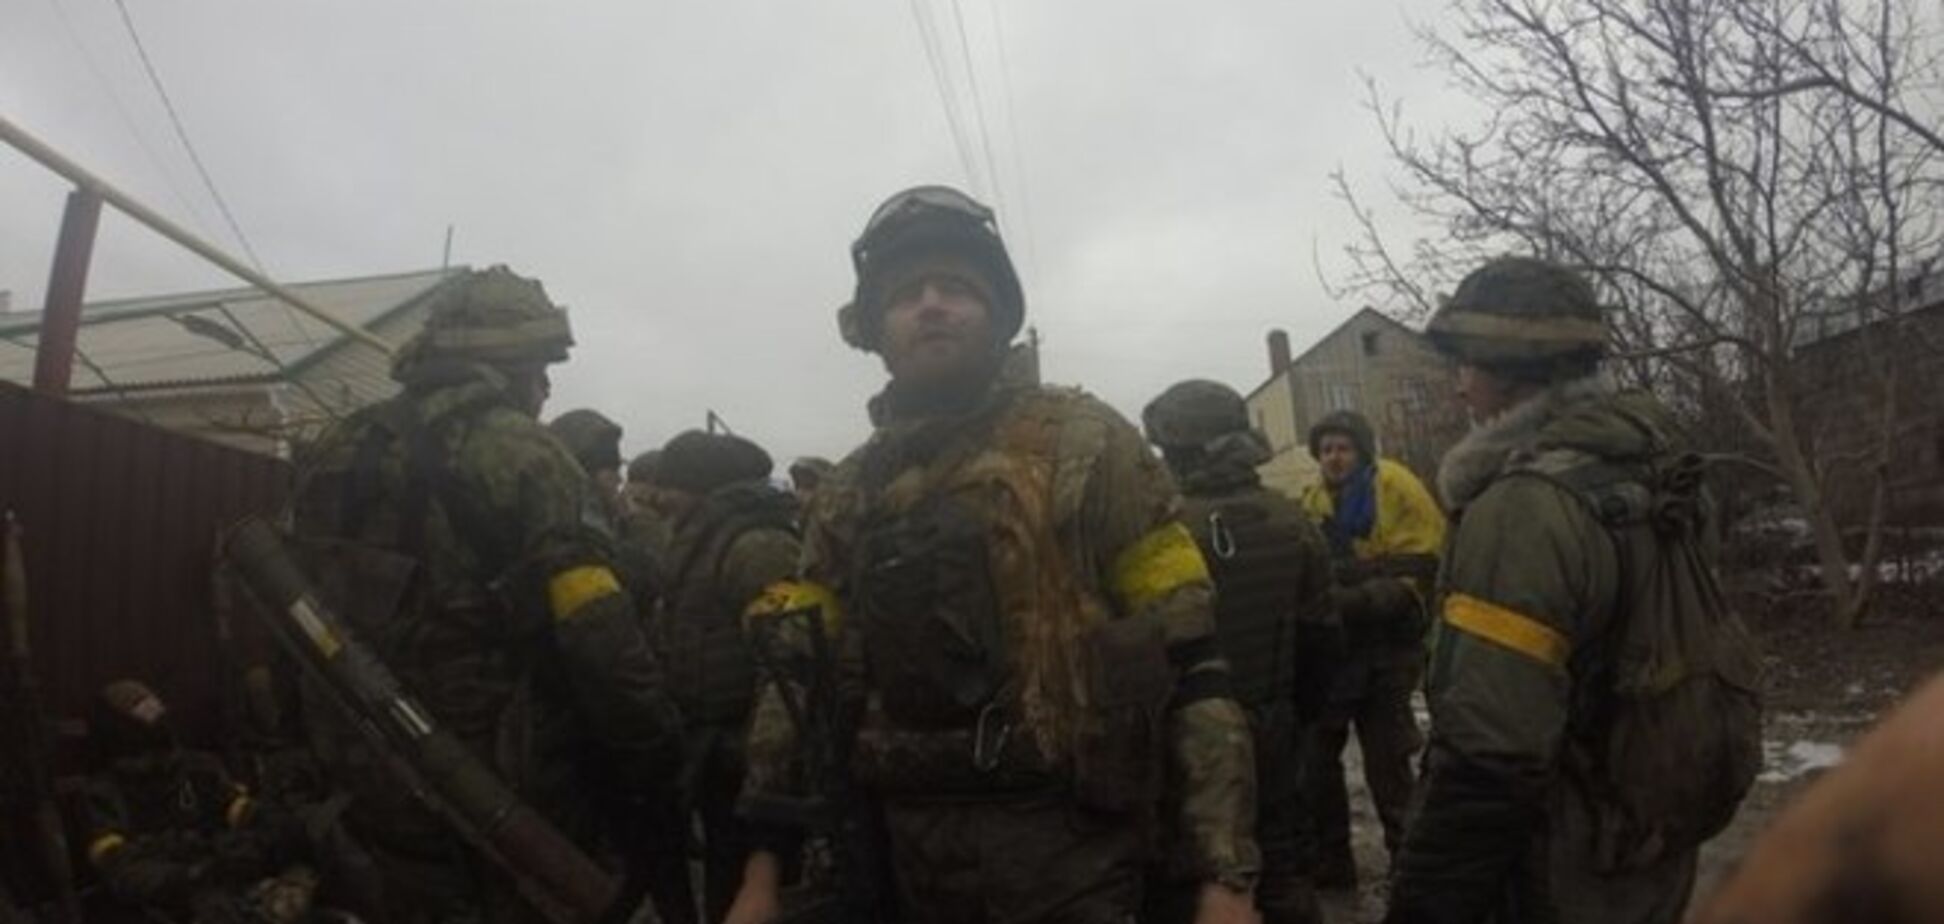 Режим перемирия в целом сохраняется, зафиксировано 10 обстрелов - пресс-служба Порошенко